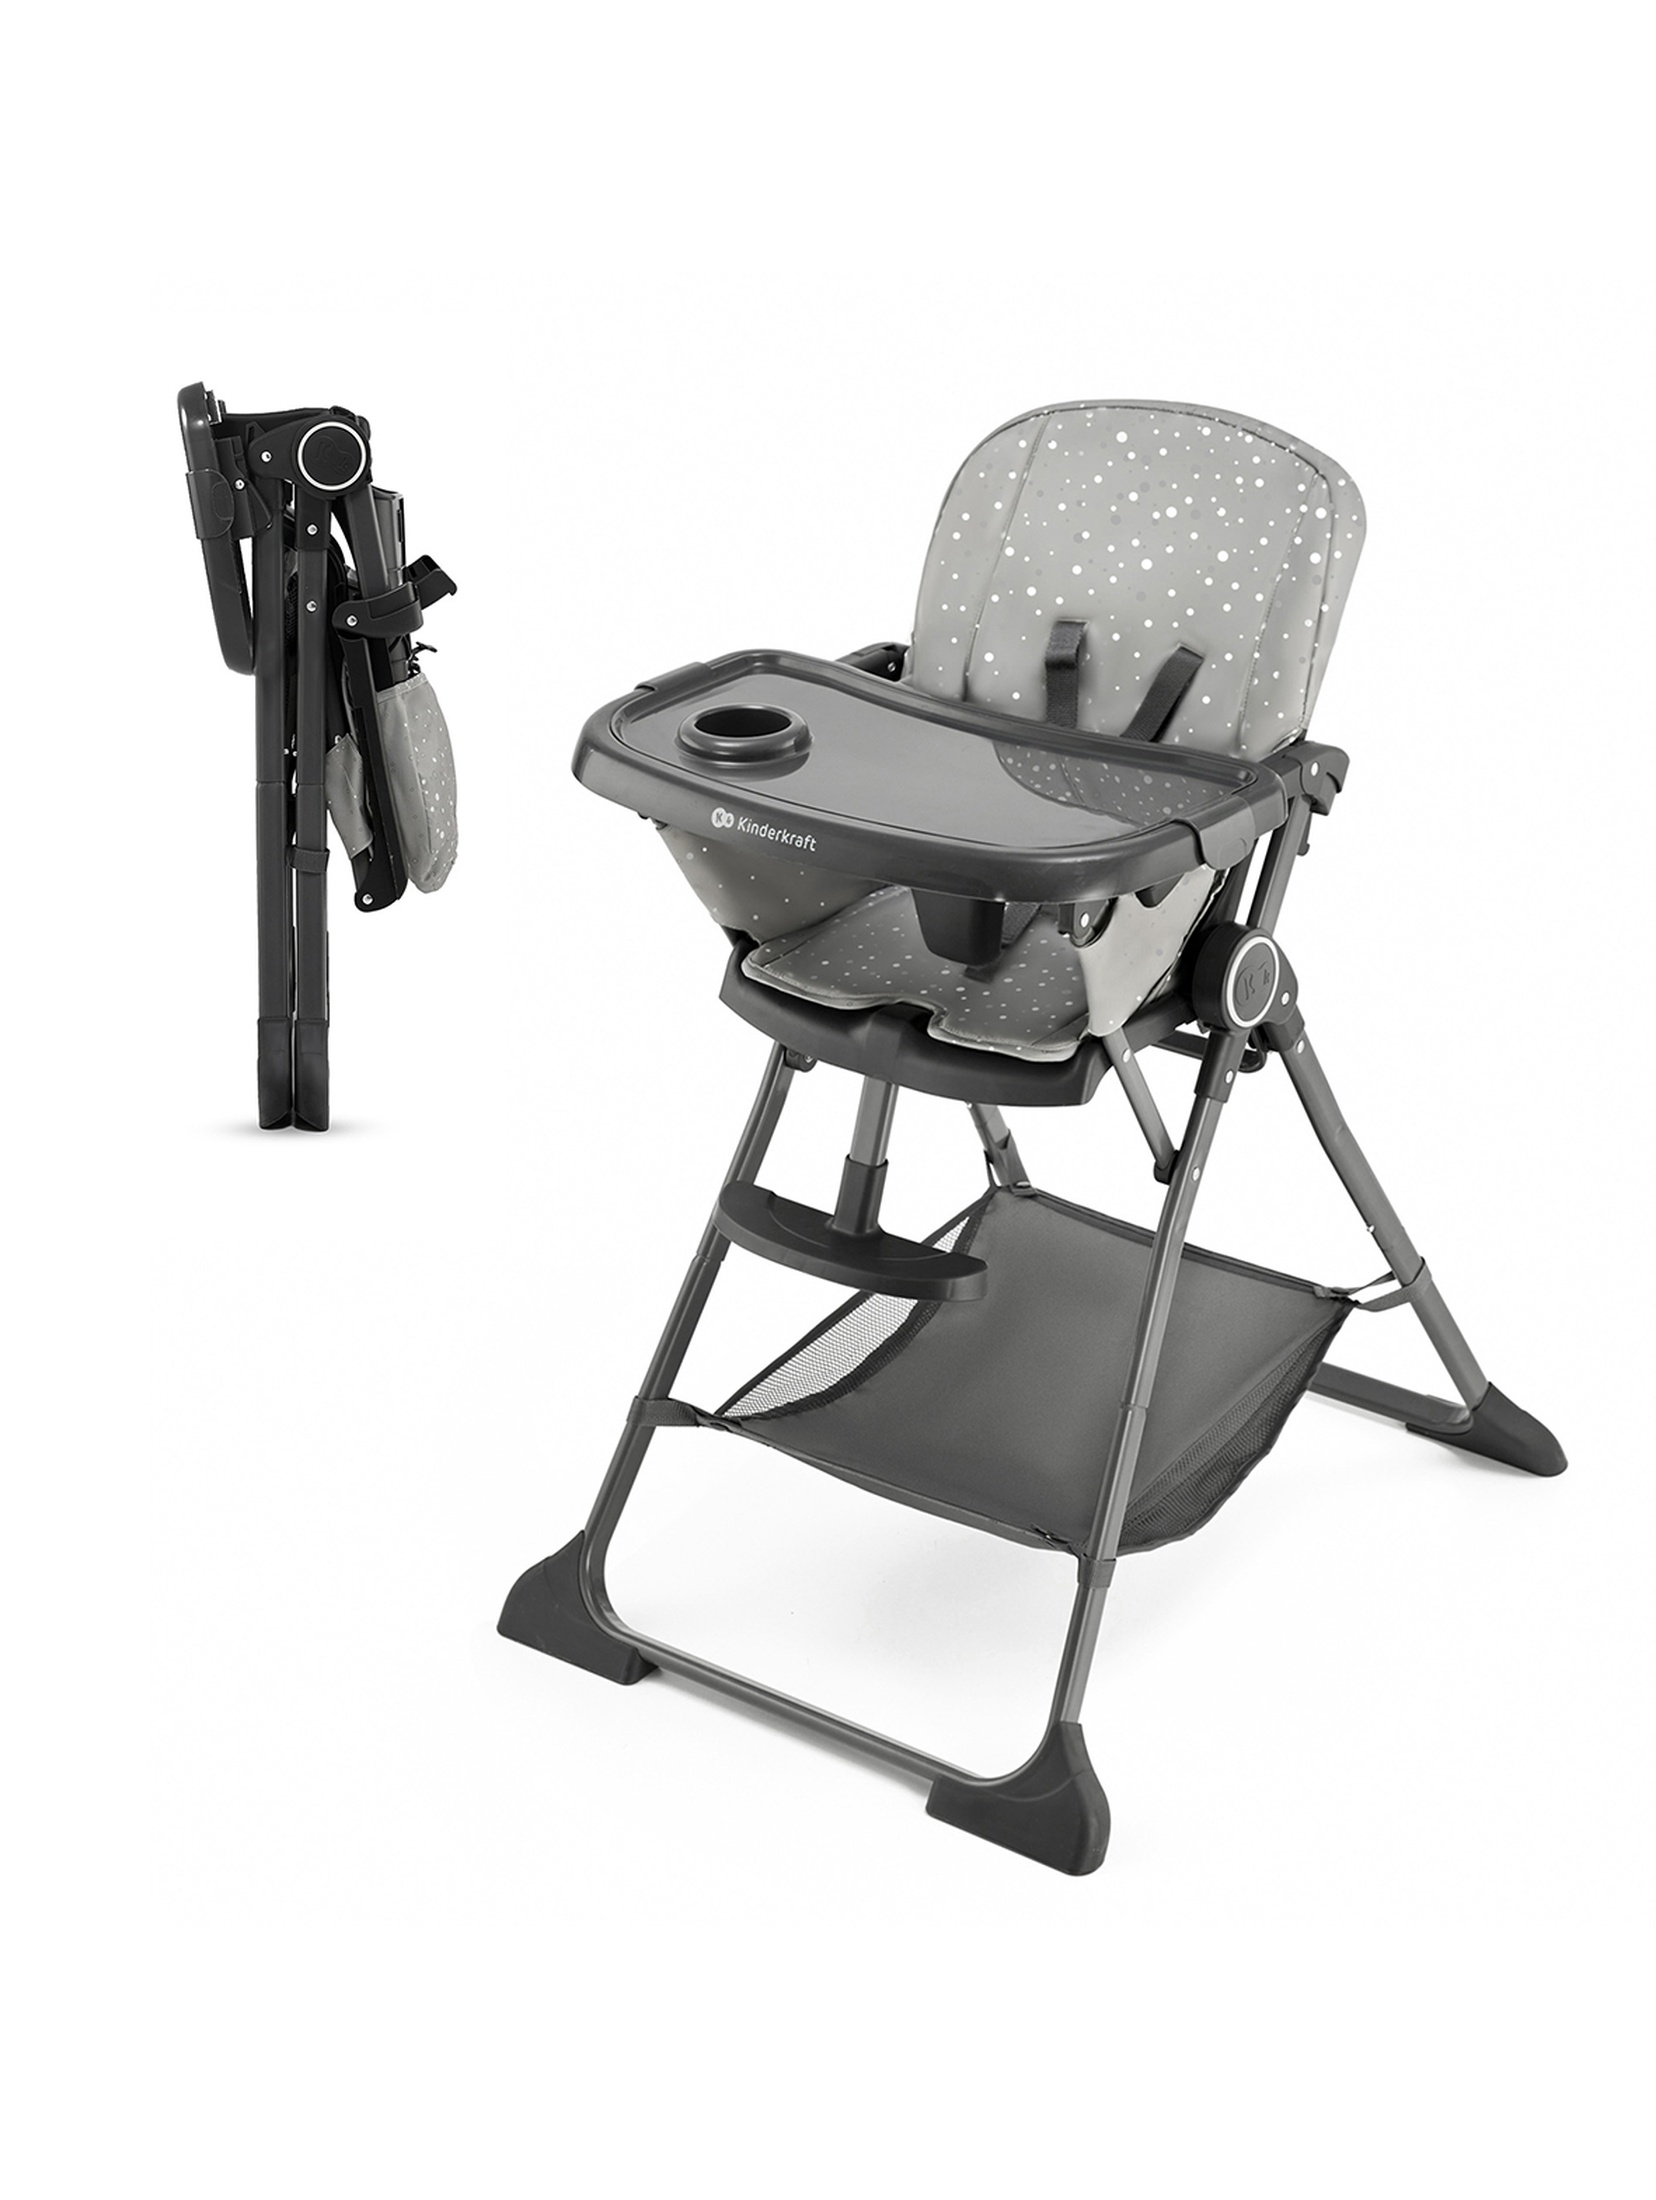 Krzesełko do karmienia składane FOLDEE Kinderkraft - grey